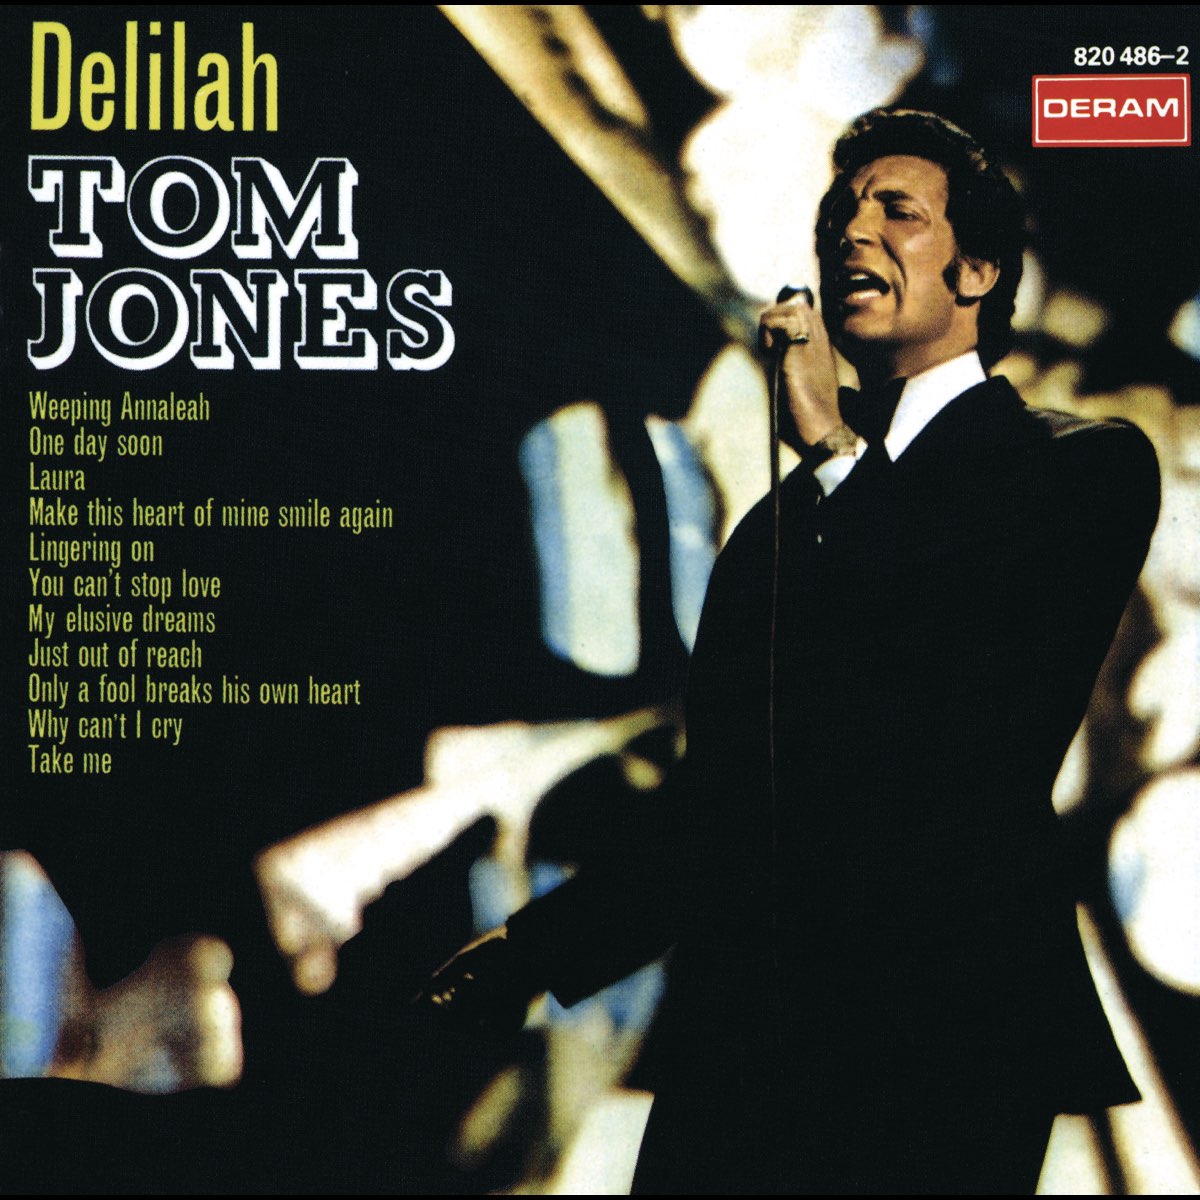 ‎delilah Album By Tom Jones Apple Music